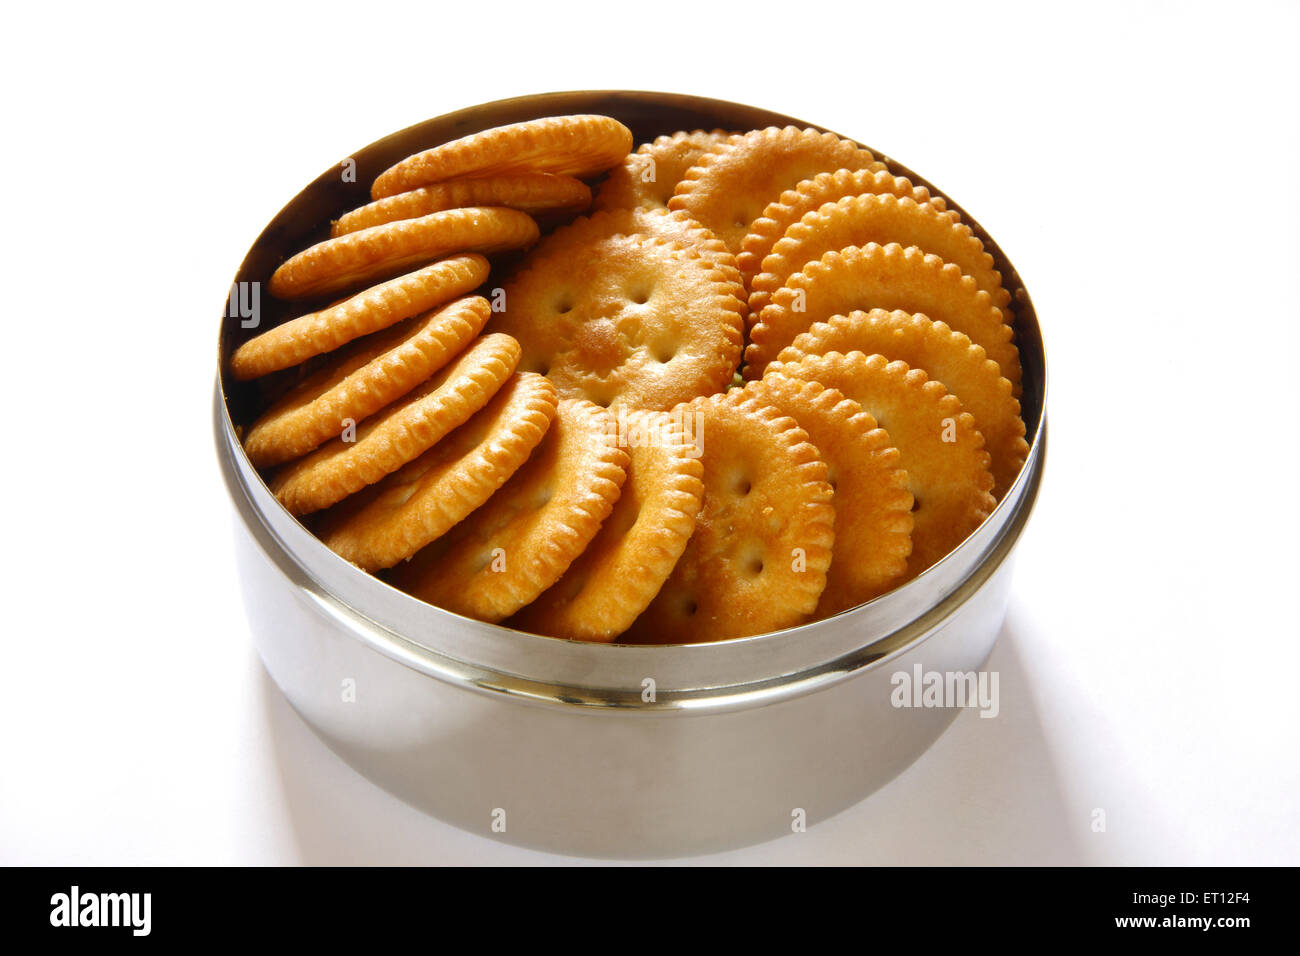 Parle Monaco gesalzener Keks in Stahlbox Container, Indien, asien Stockfoto